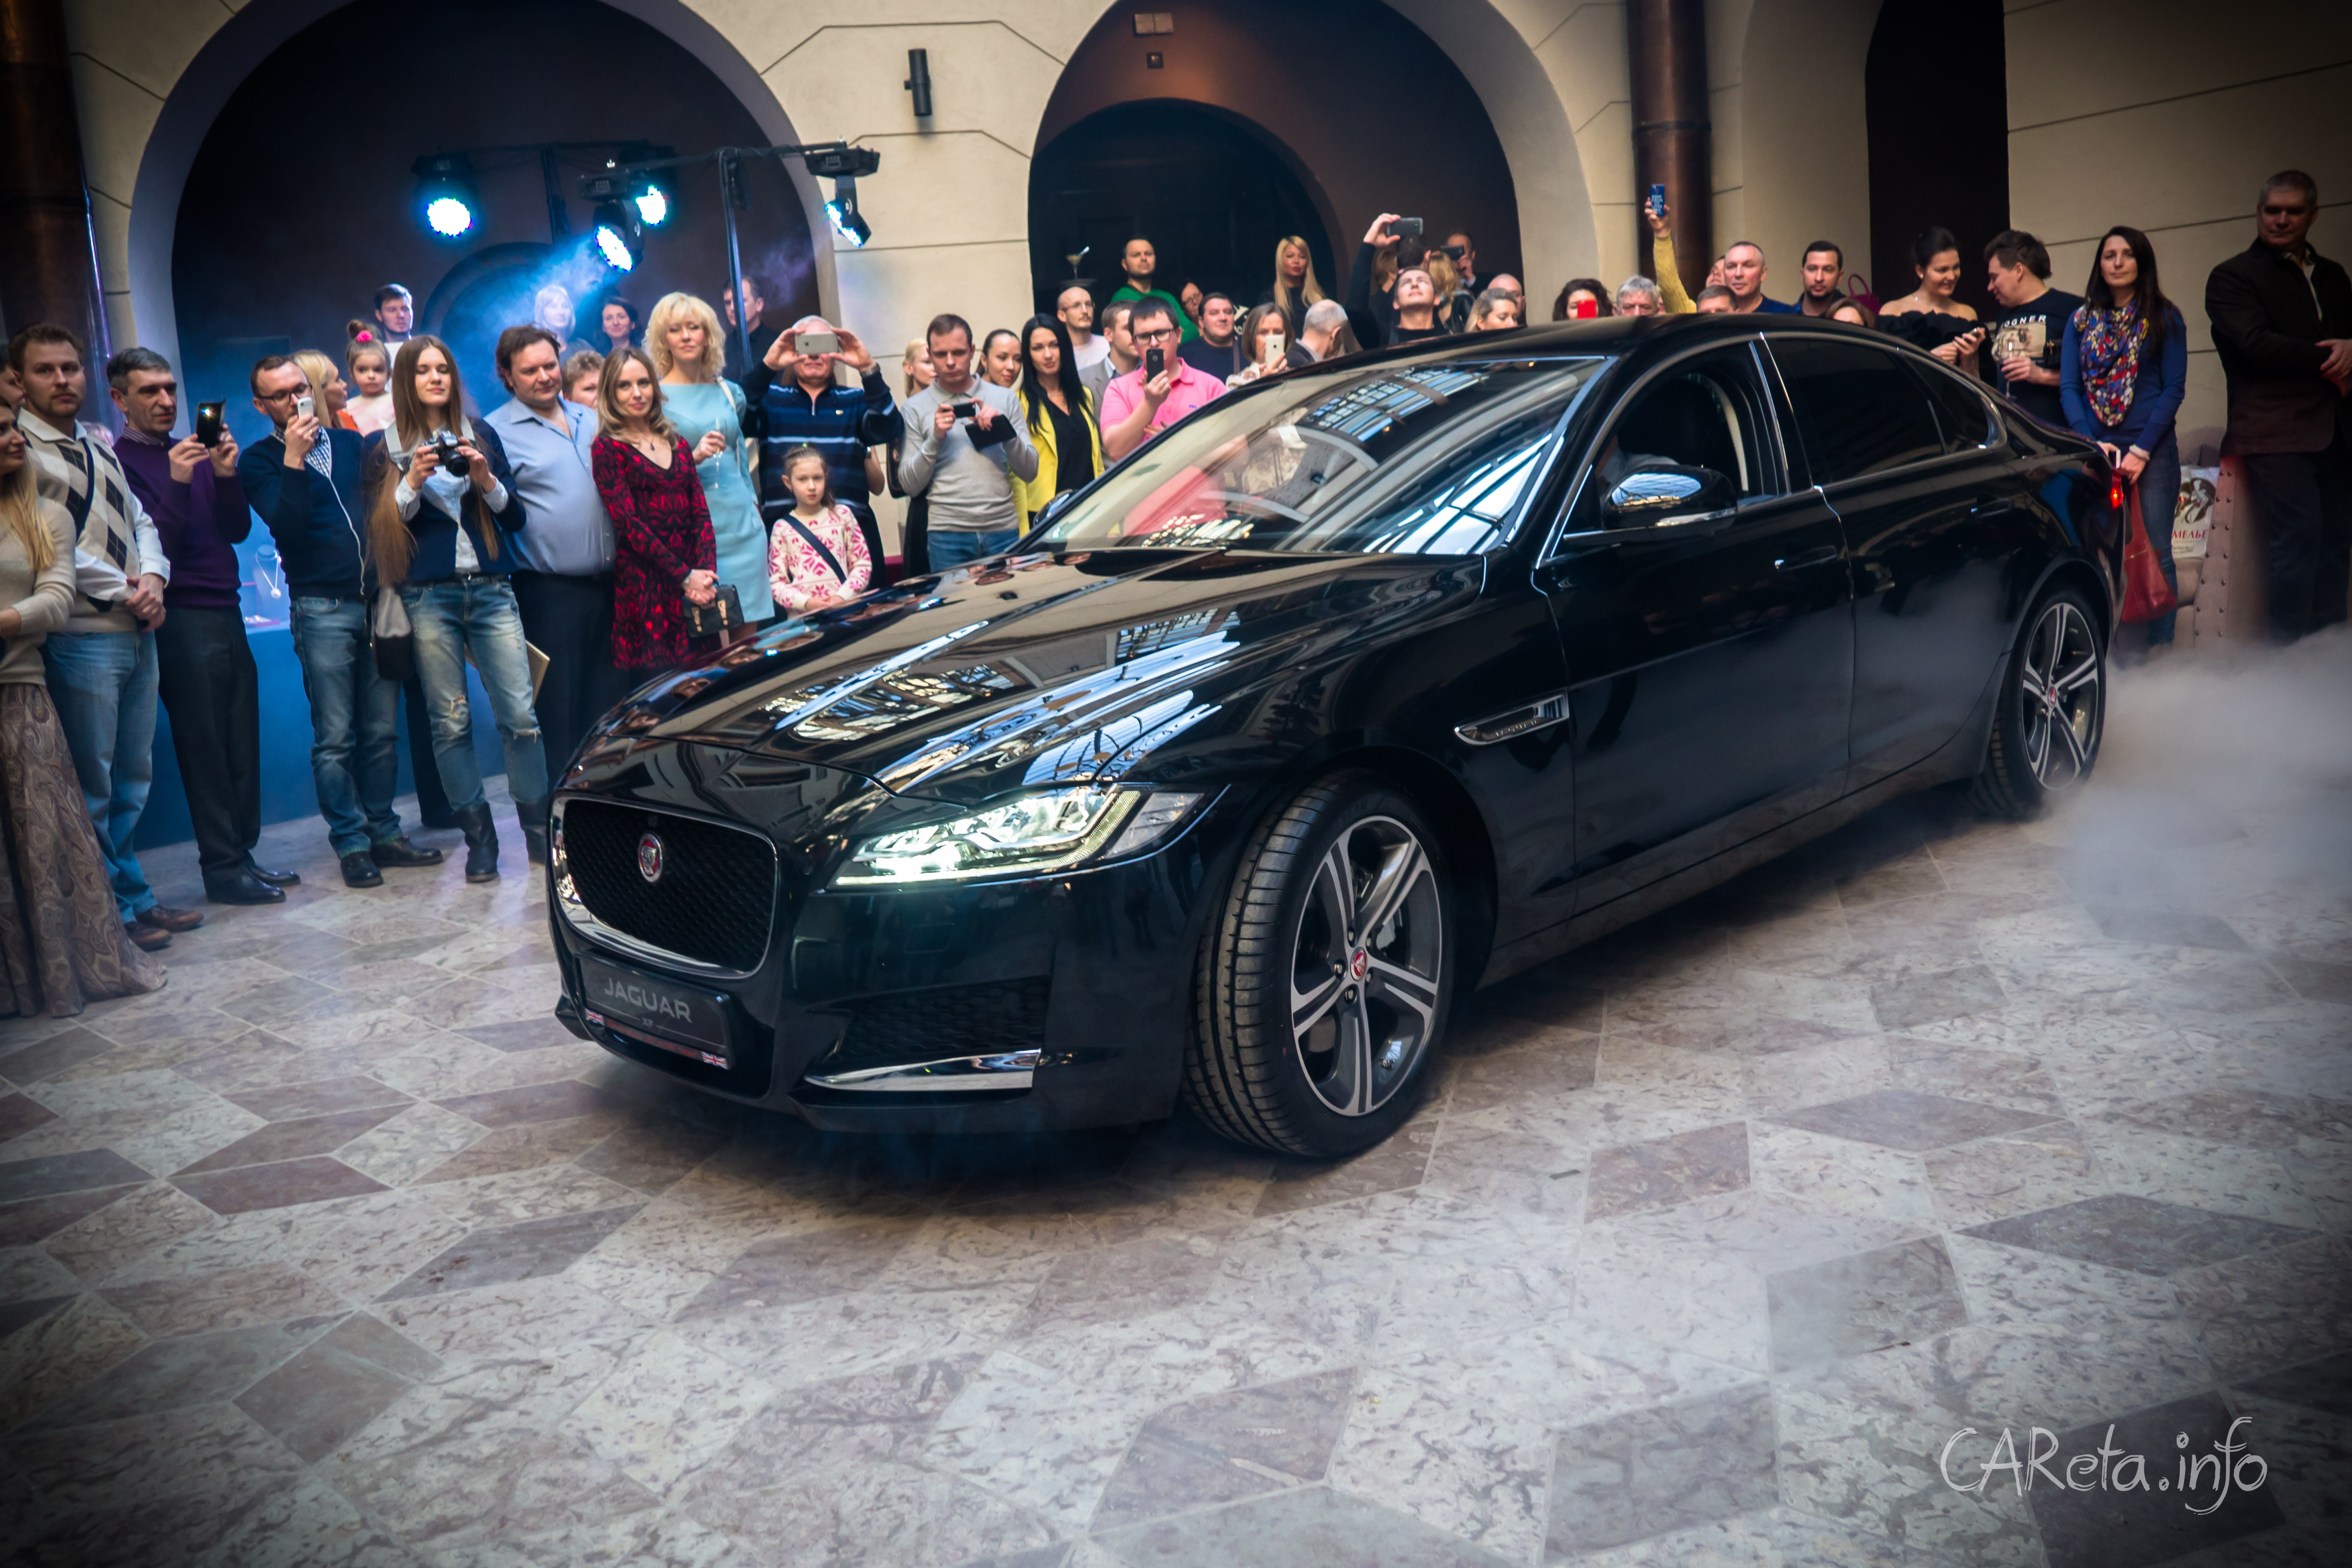 Jaguar XF: посвящение в рыцари